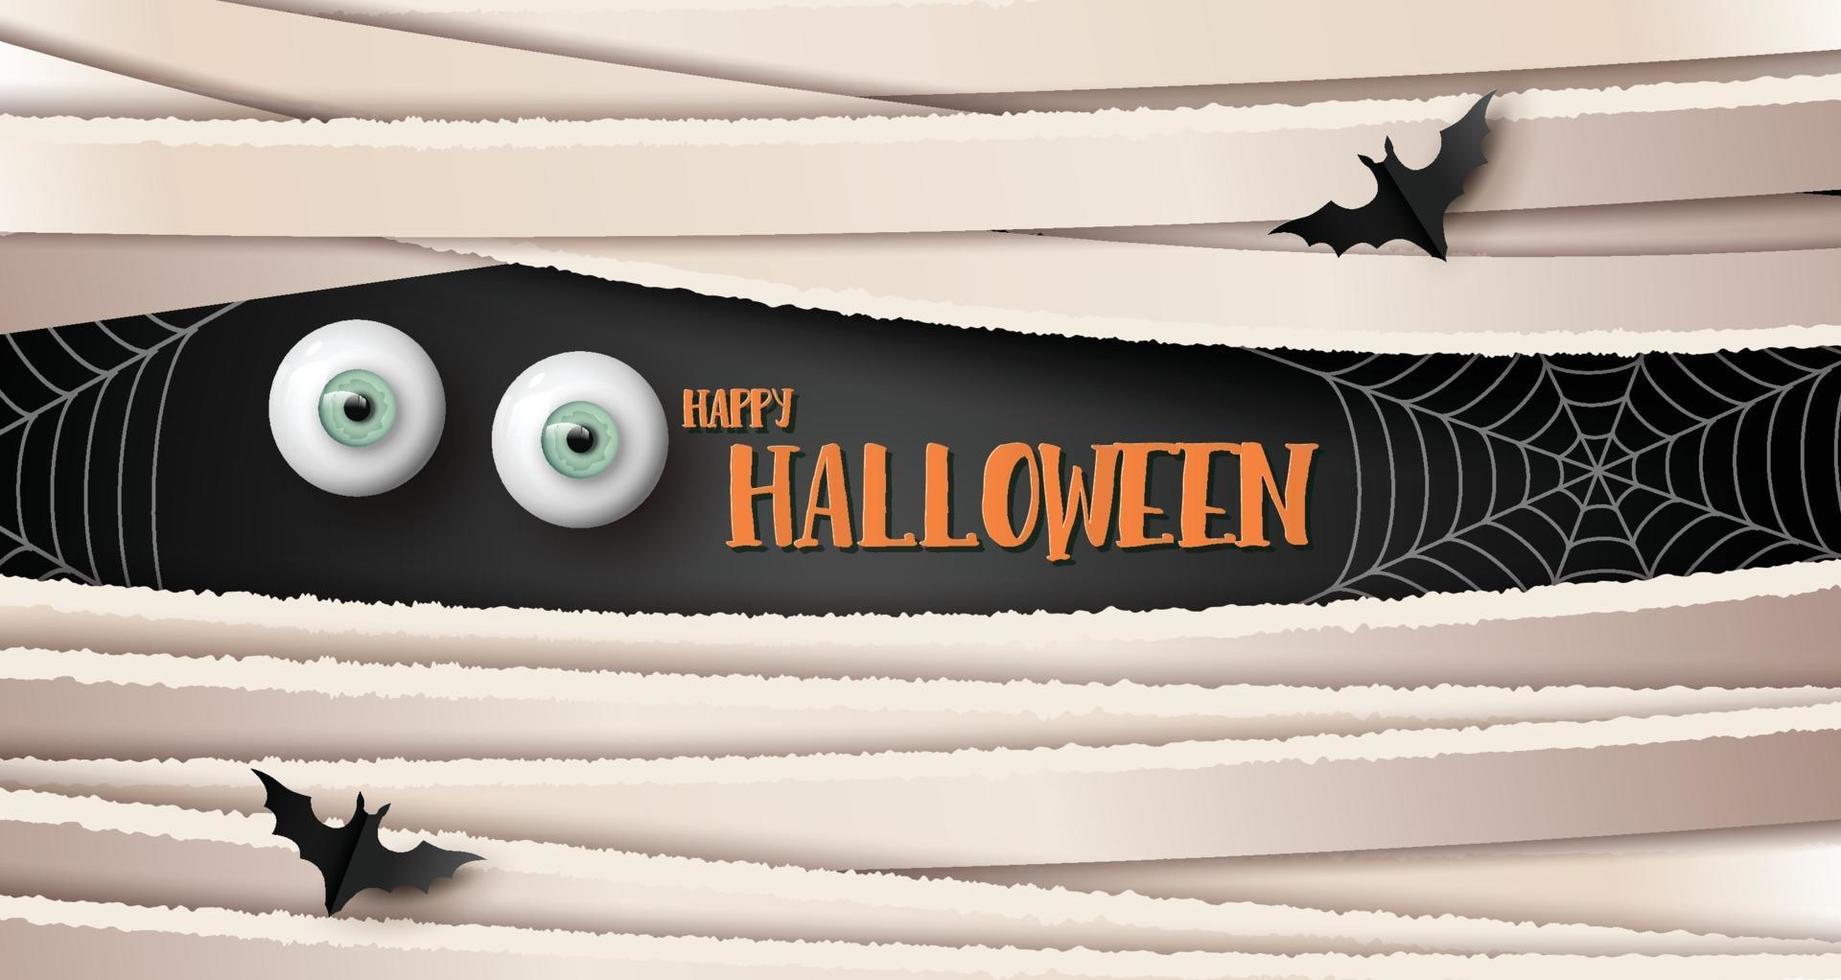 bannière de voeux joyeux halloween avec les yeux et les chauves-souris. style de papier découpé. vecteur